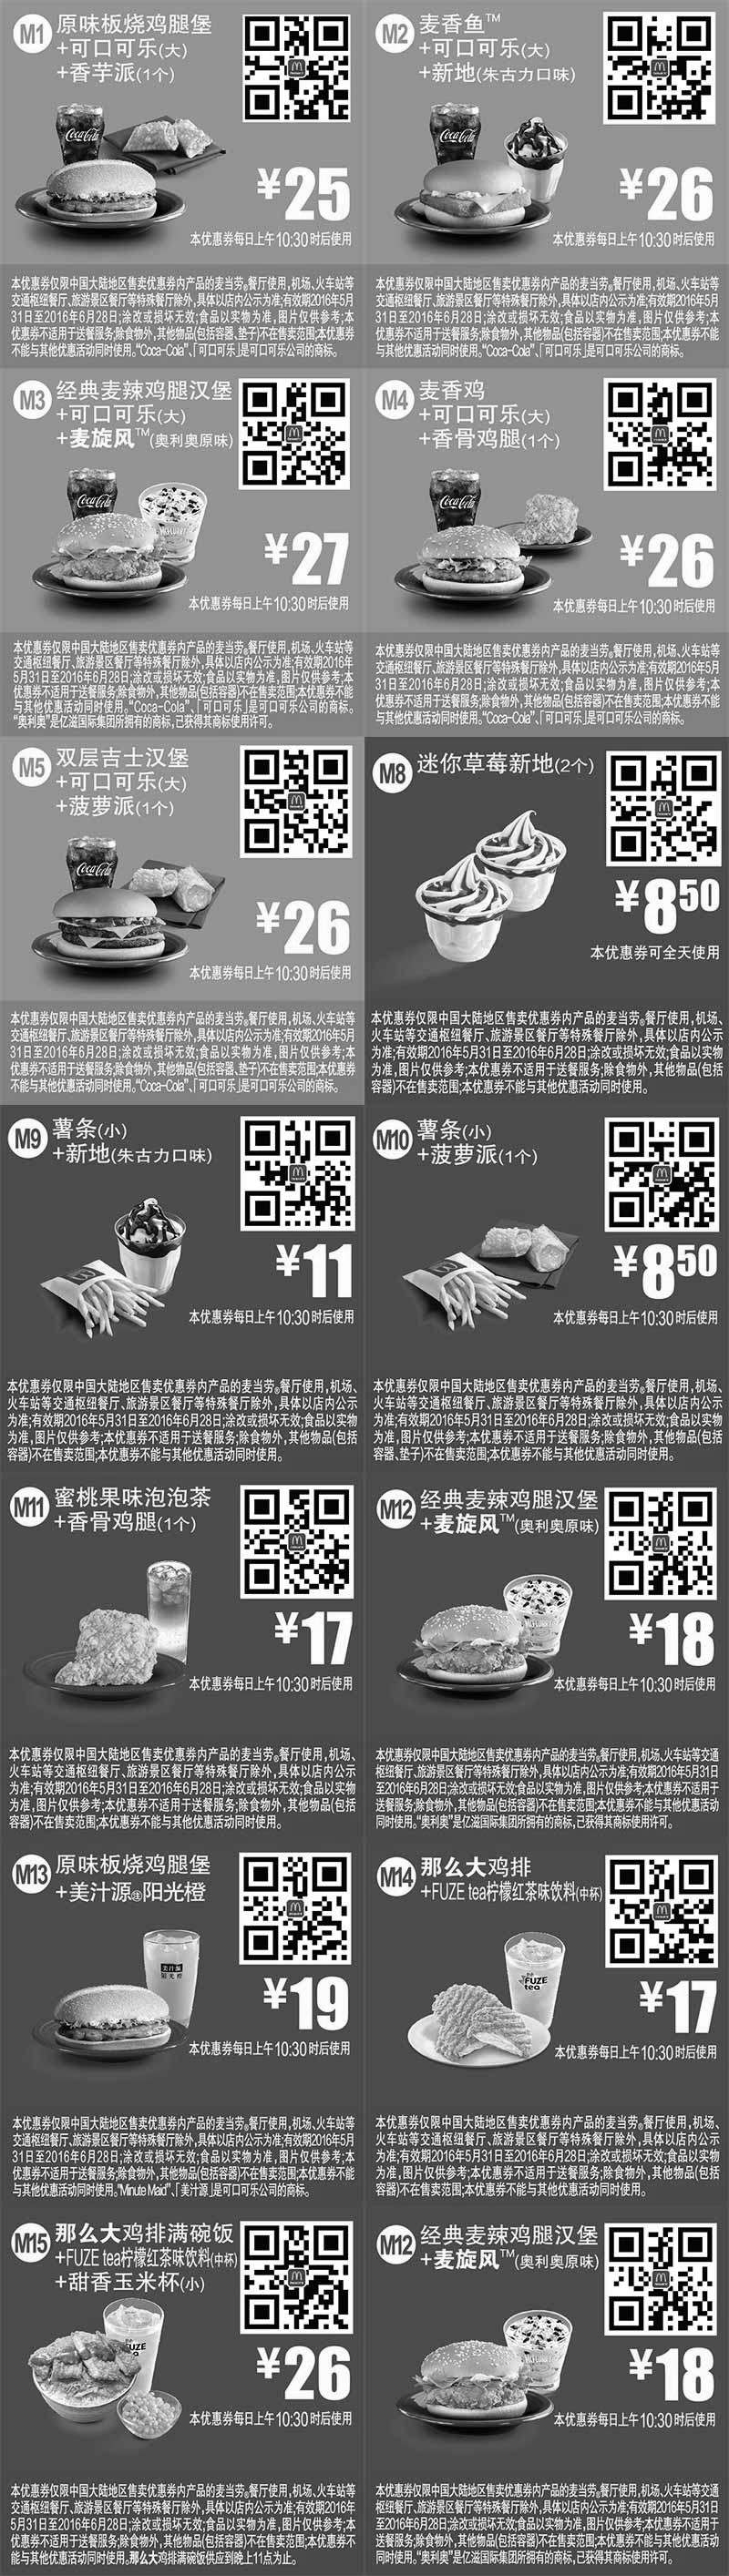 黑白优惠券图片：麦当劳优惠券2016年6月手机版整张版本，手机出示即享优惠价 - www.5ikfc.com